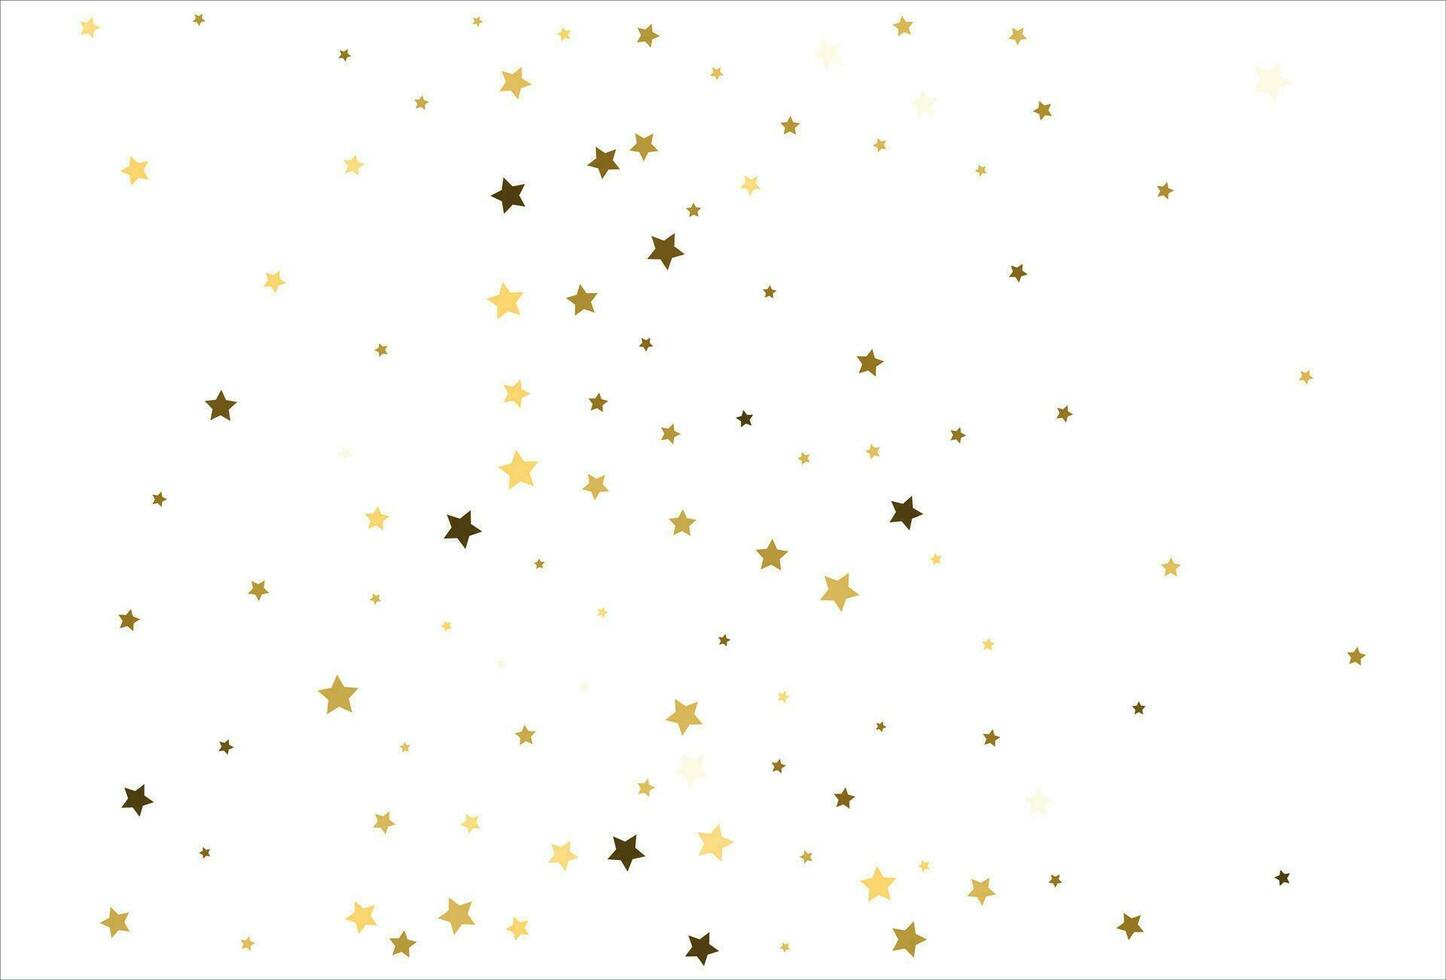 estrellas doradas que caen al azar sobre fondo blanco. patrón brillante para pancarta, tarjeta de felicitación, tarjeta de navidad y año nuevo, invitación, postal, embalaje de papel vector